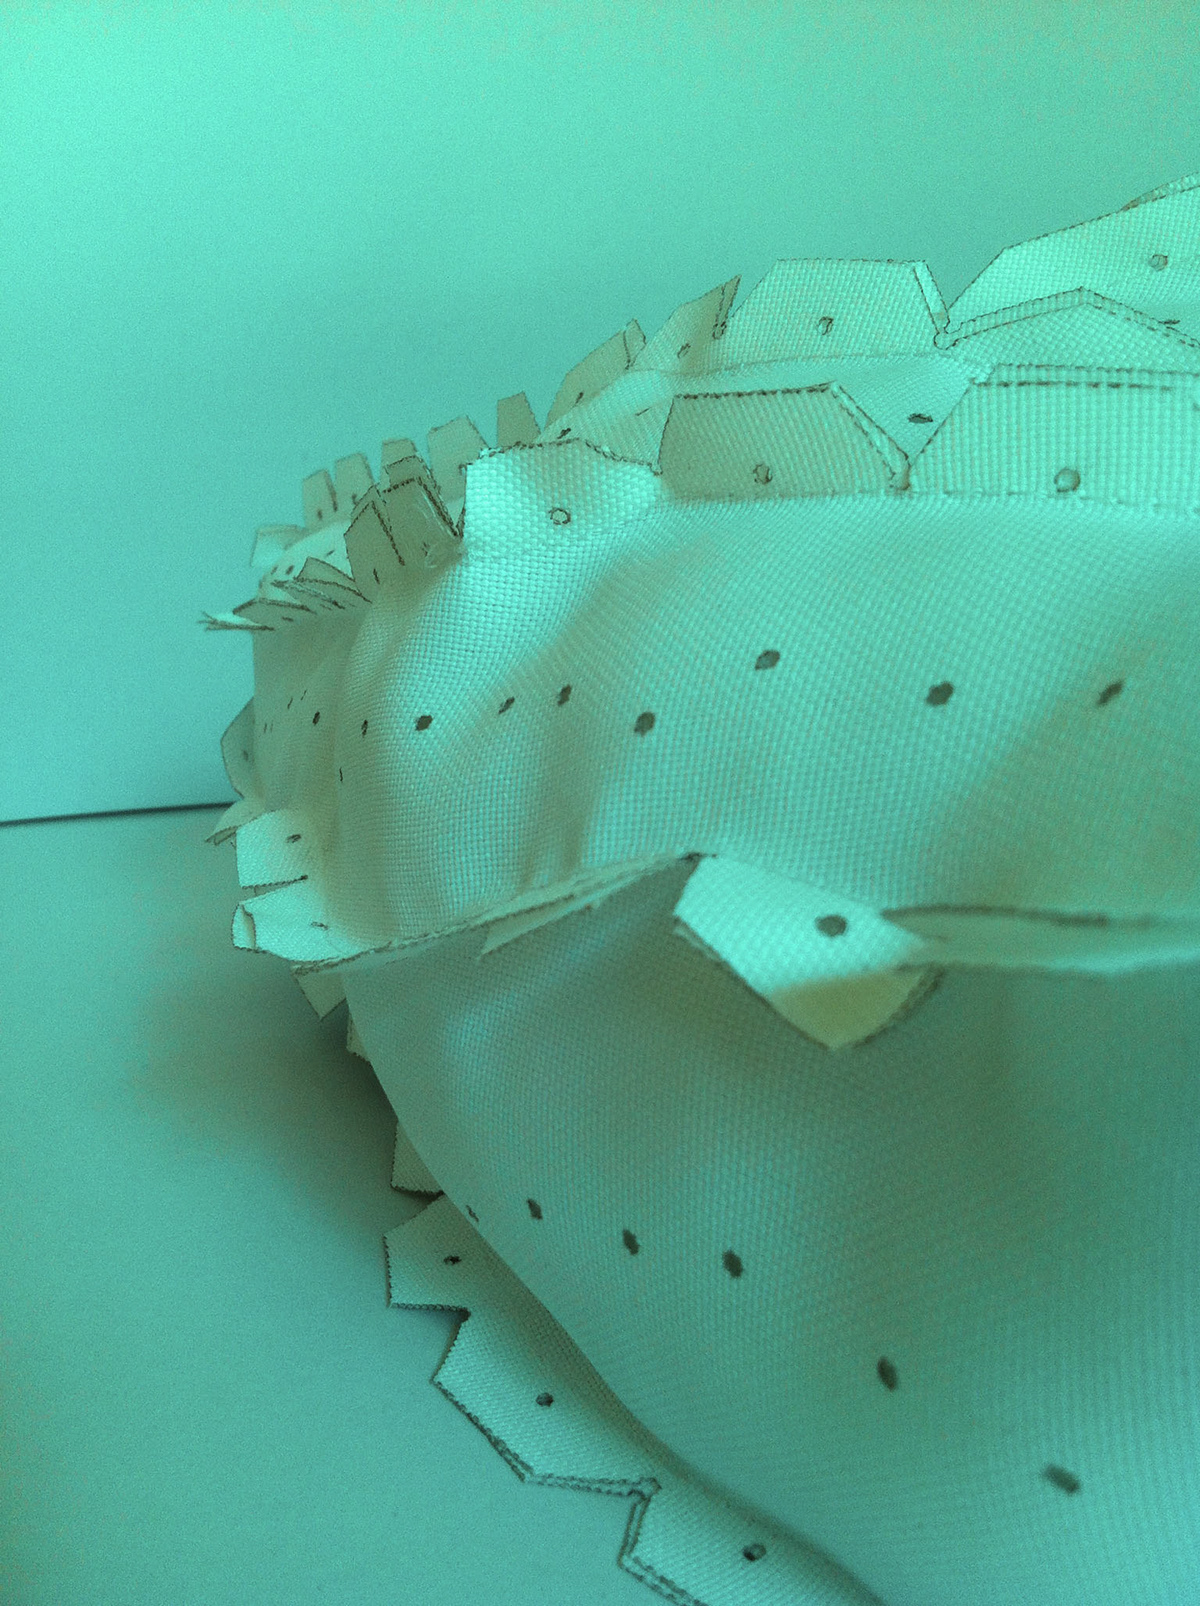 Workshop Rhinoceros3D digital fabrication